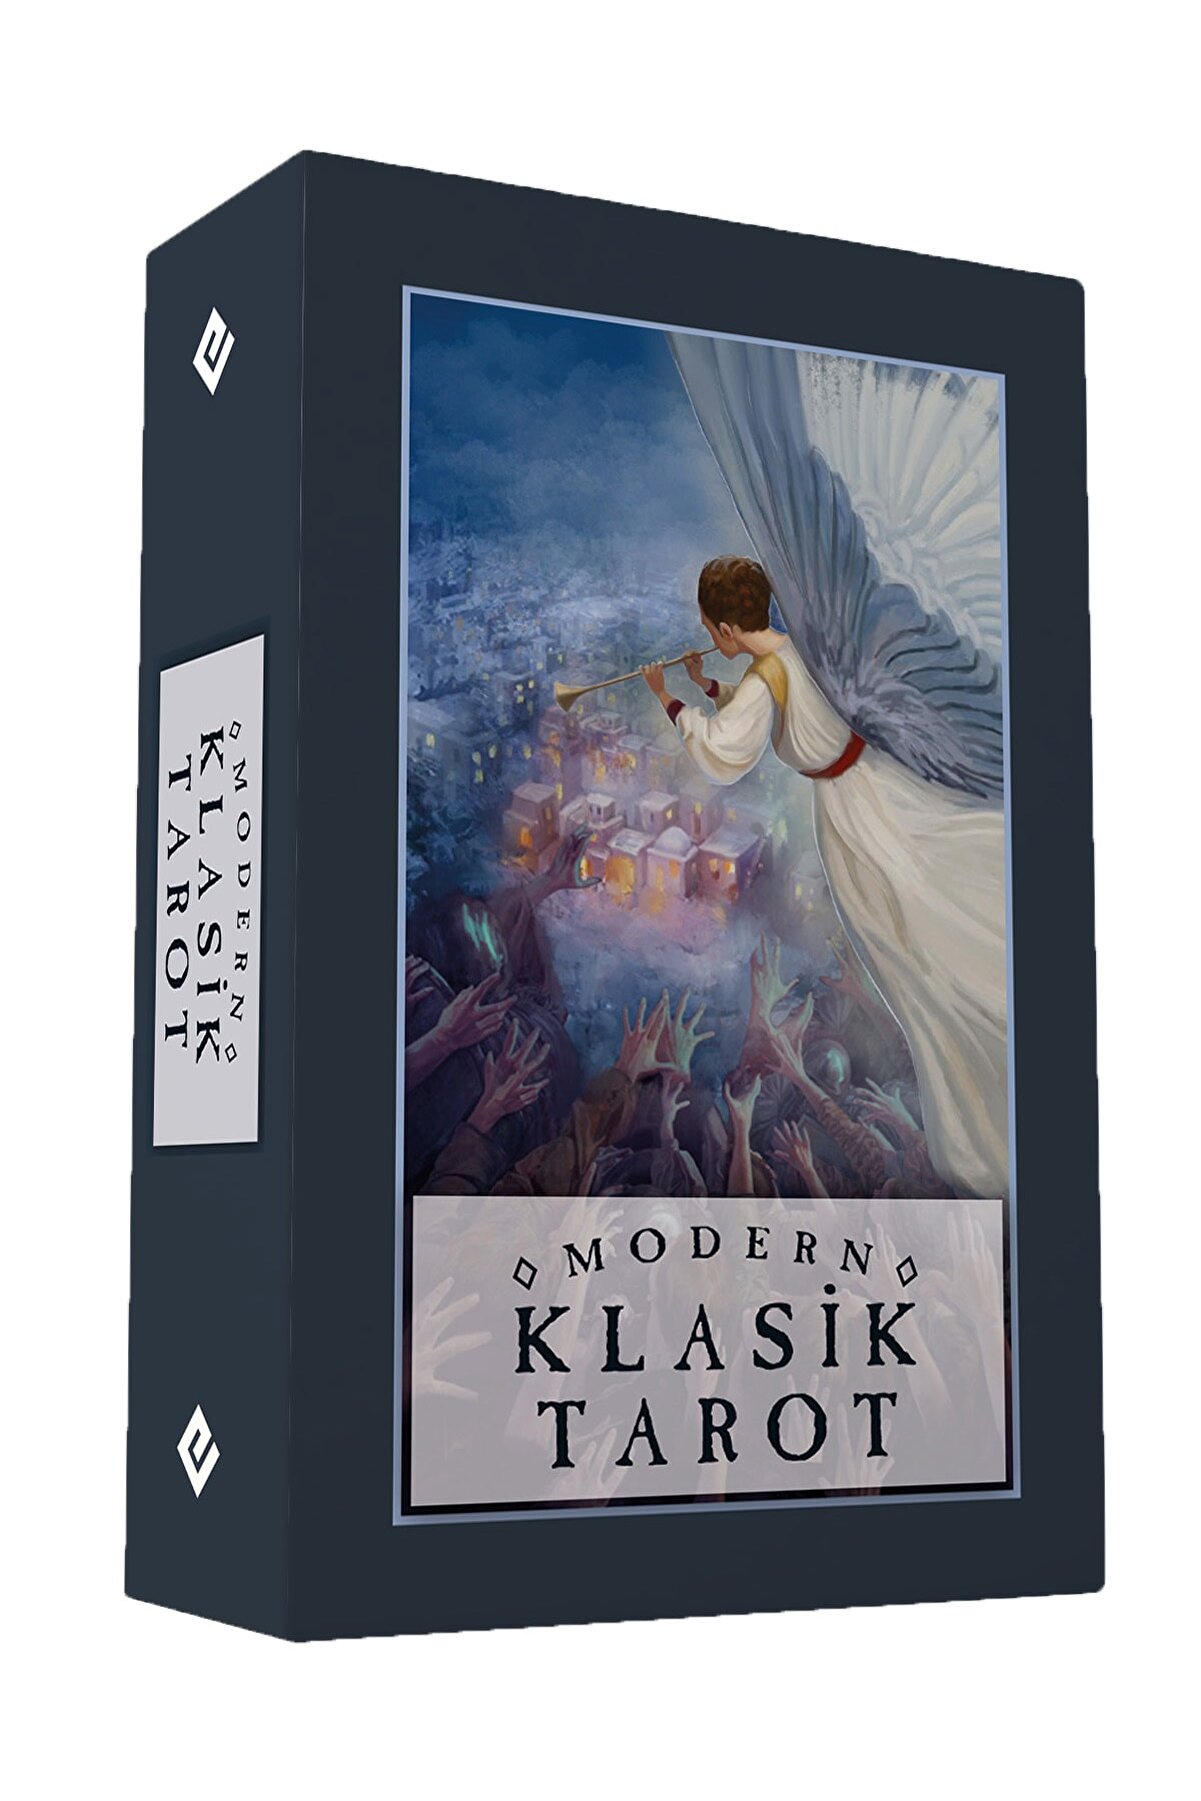 Ekorp Kitap Mini Modern Klasik Tarot - 78 Kartlık Deste Ve Rehber Kitapçık 2022 - 5,6x8,7cm Cep Boy